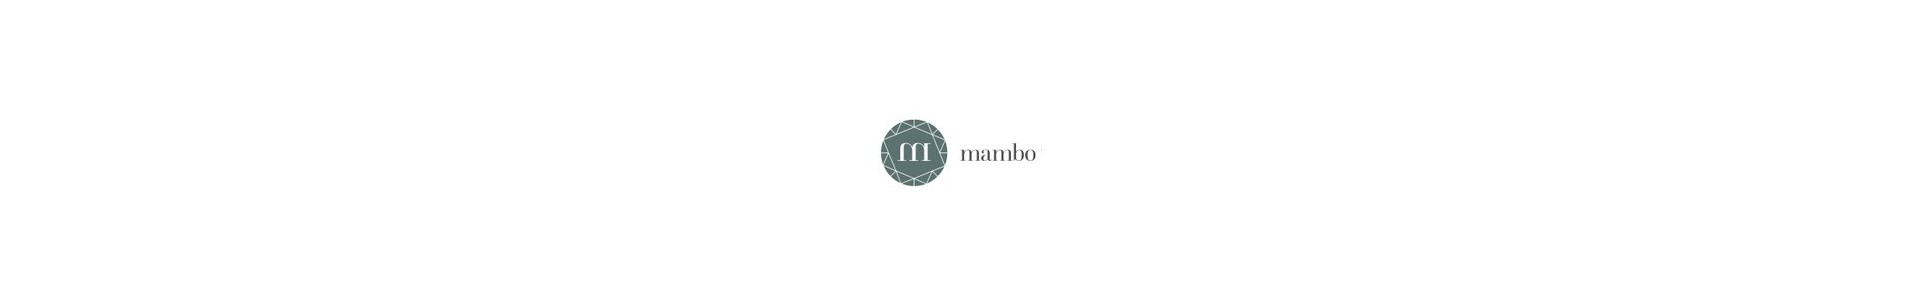 Catálogo Mambo mobiliario, iluminación y accesorios Muebles Lluesma